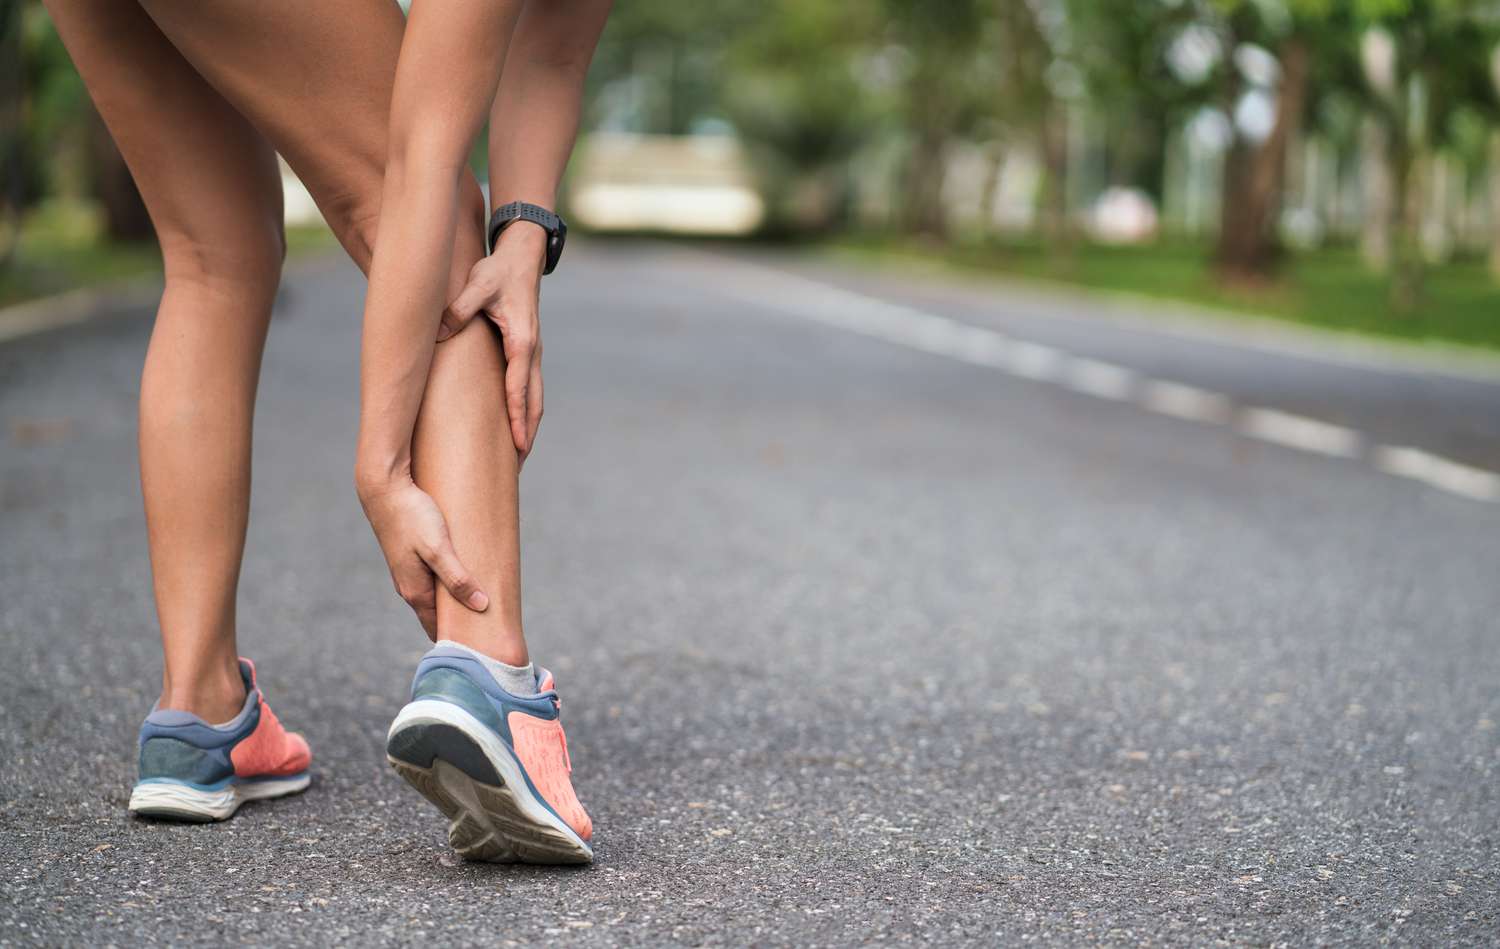 Achillesblessure bij het buiten lopen. Vrouwen die achillespees met de handen dicht bij elkaar houden en lijden aan pijn. Enkeldraai verstuiking ongeval bij sportoefening hardlopen joggen.